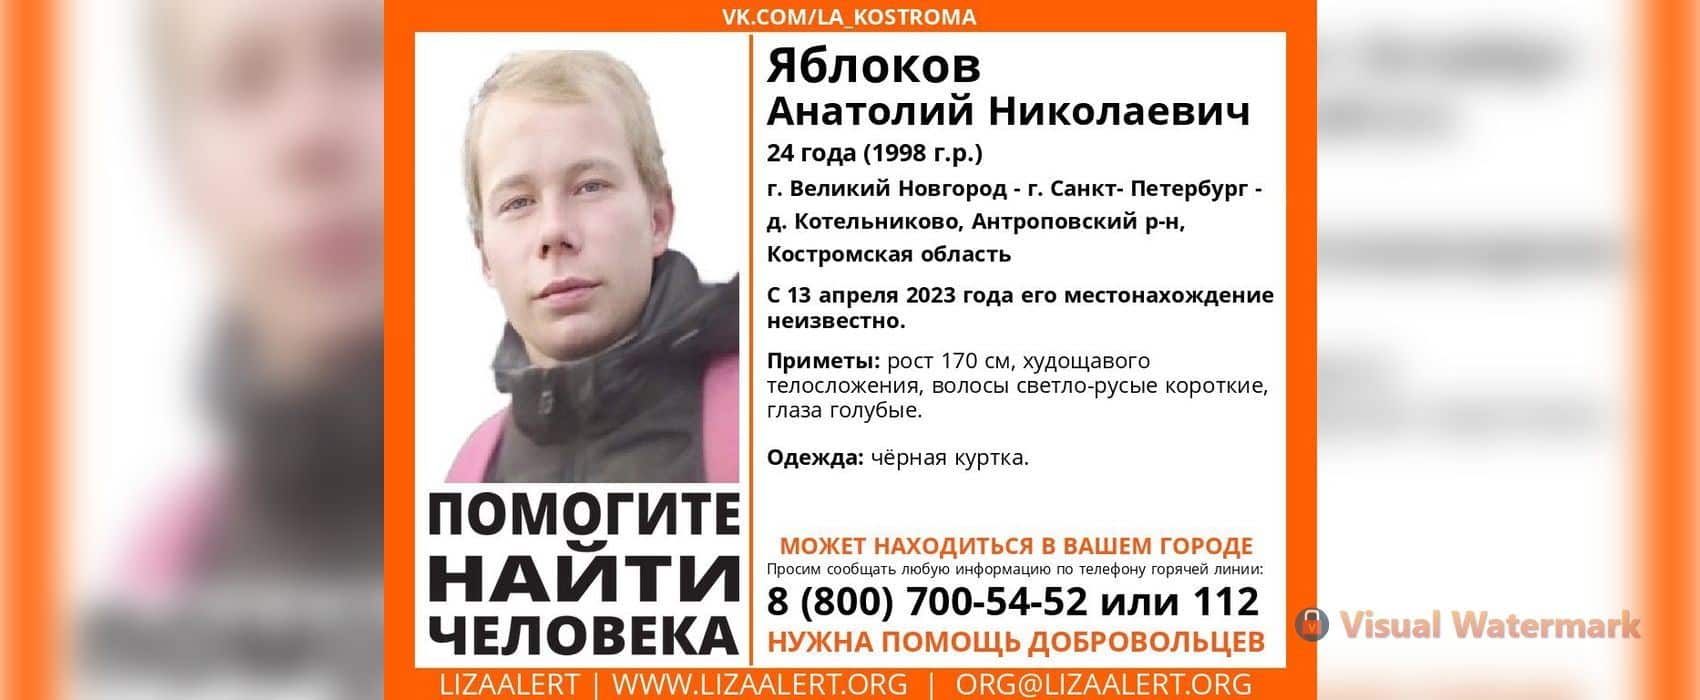 В Костроме ищут 24-летнего мужчину с голубыми глазами